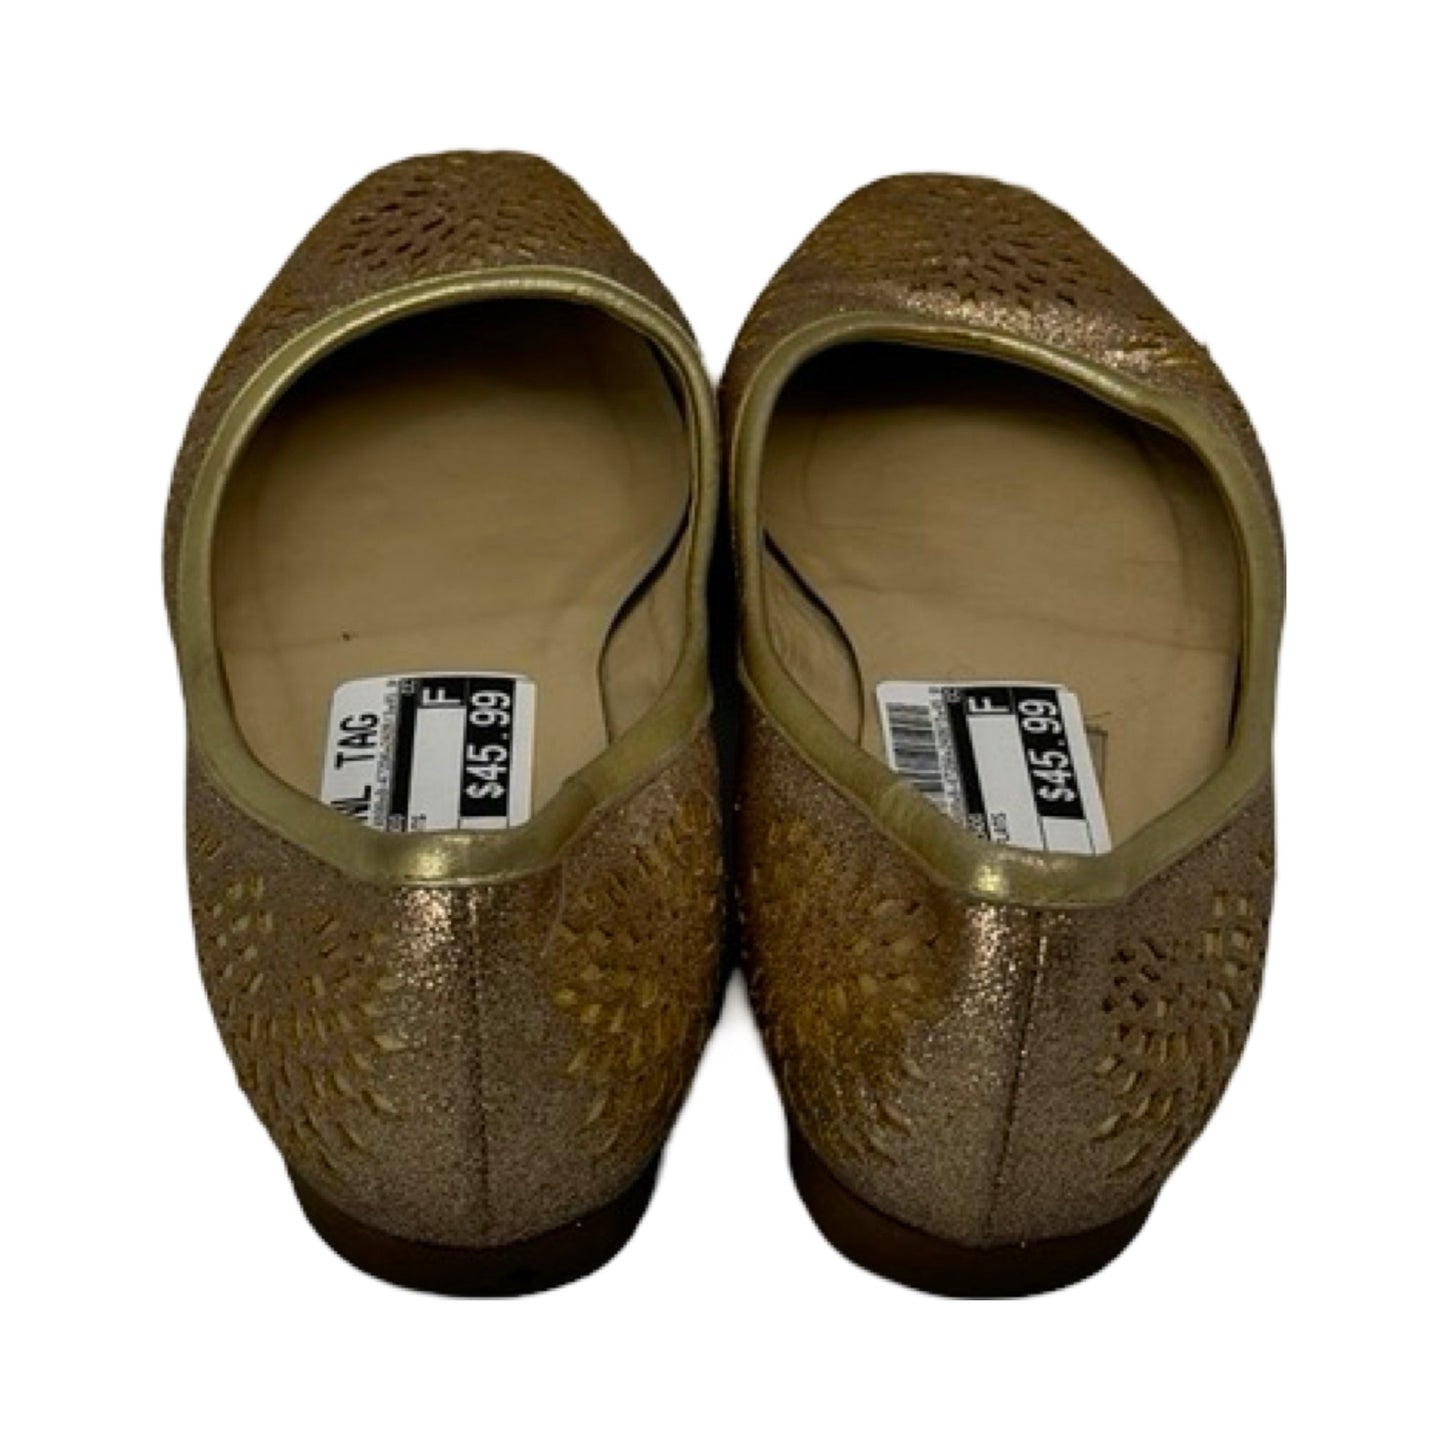 Gold Shoes Flats Jimmy Choo, Size 9